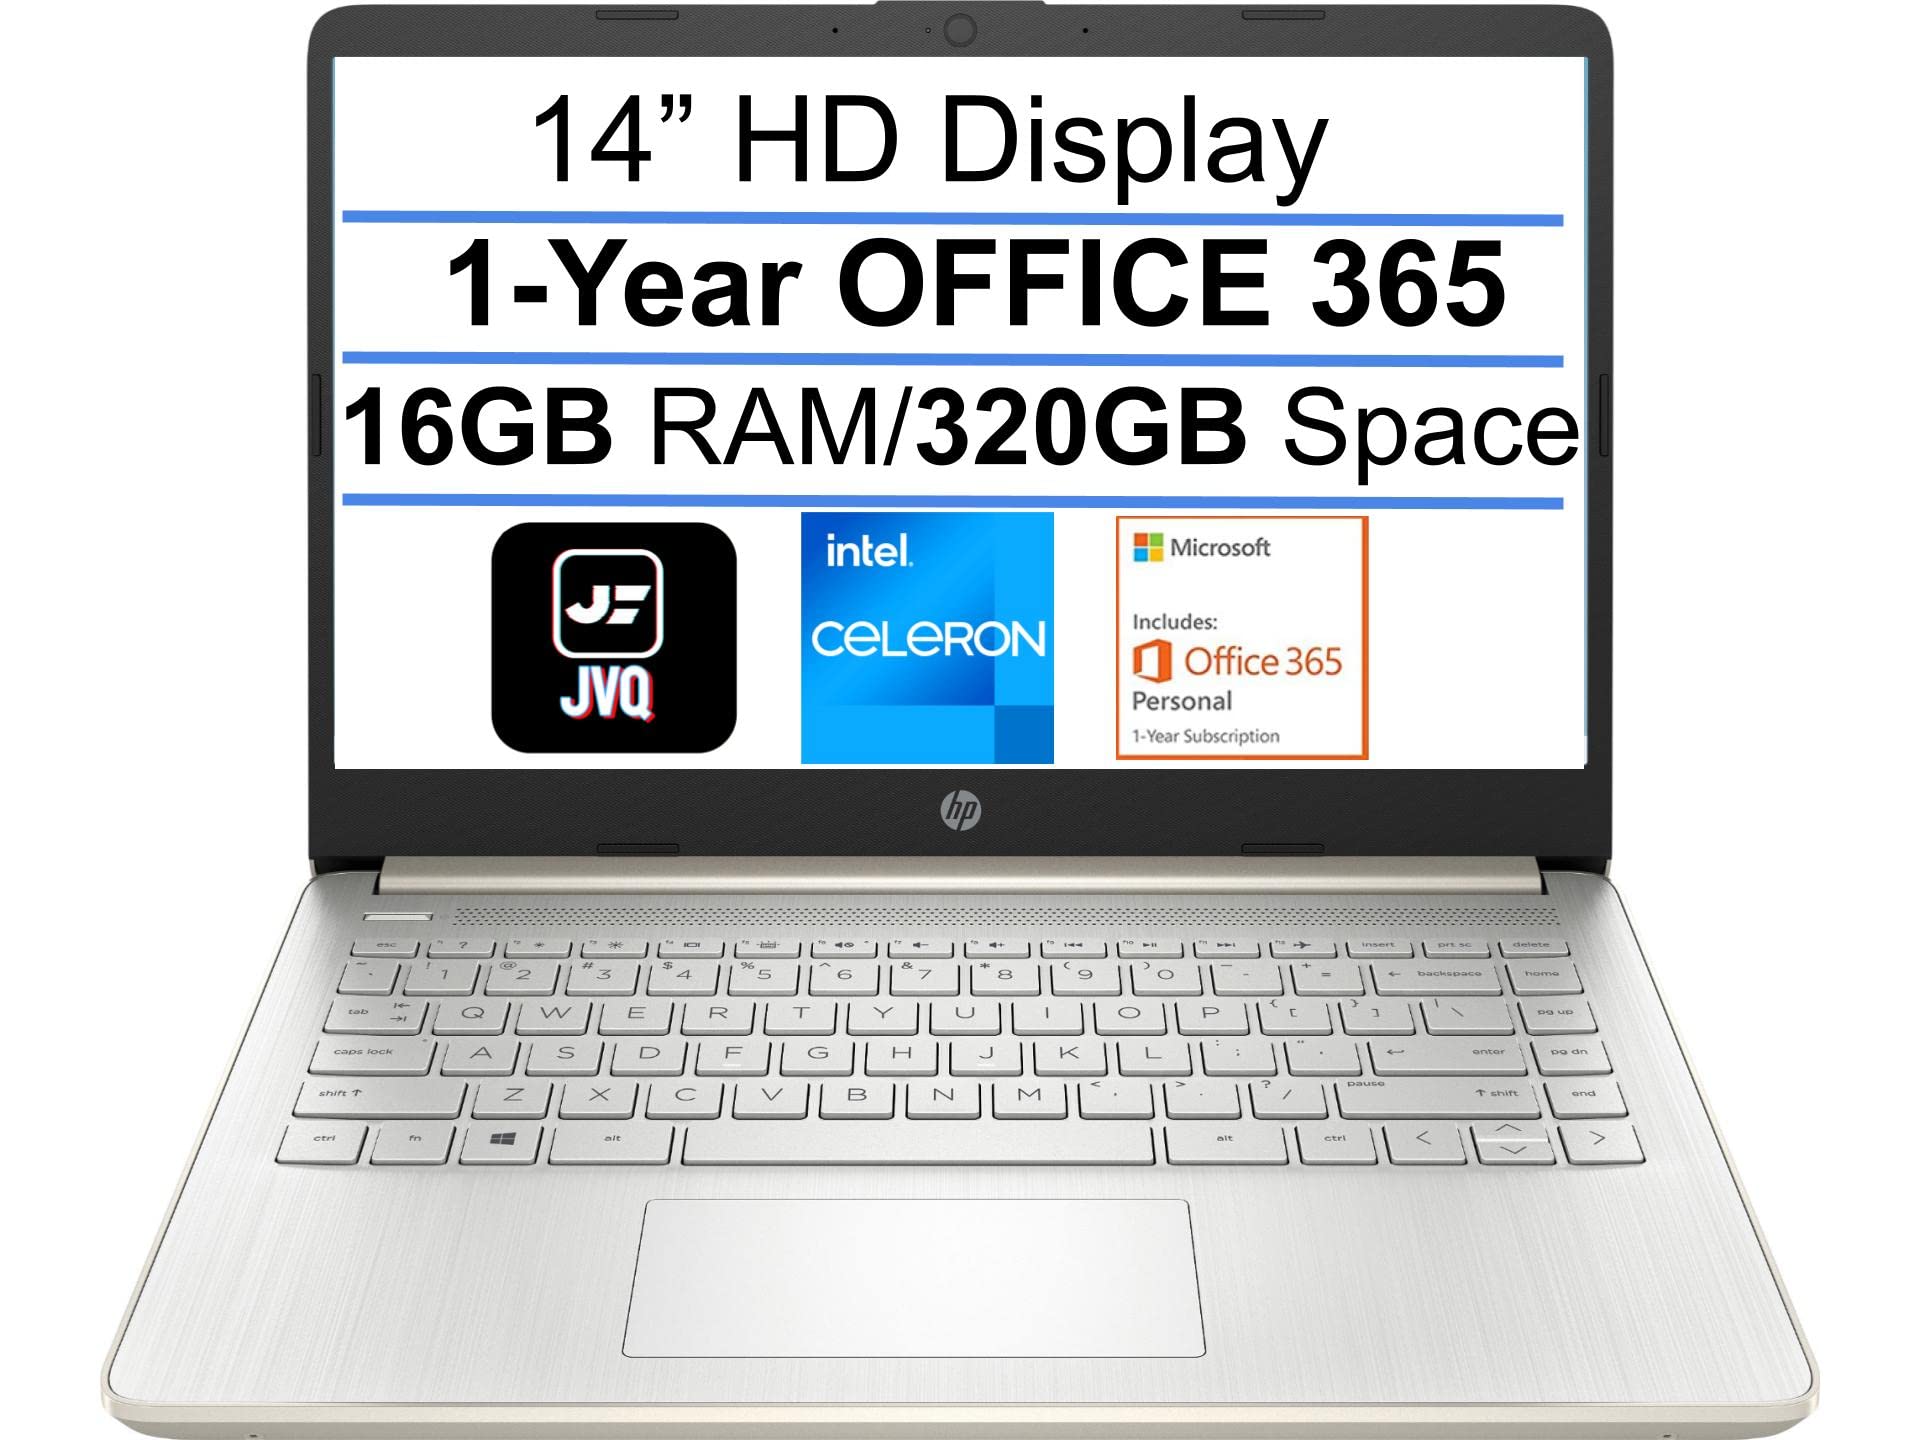 HP 2022 Newest Stream 14" HD Laptop, Intel Celeron N4020(up to 2.8GHz), 16GB RAM, 320GB Space(64GB eMMC+256GB Card), 1-Year Office 365, WiFi, HDMI, USB-C, Webcam, Bluetooth, Windows 10S, Gold+JVQ MP